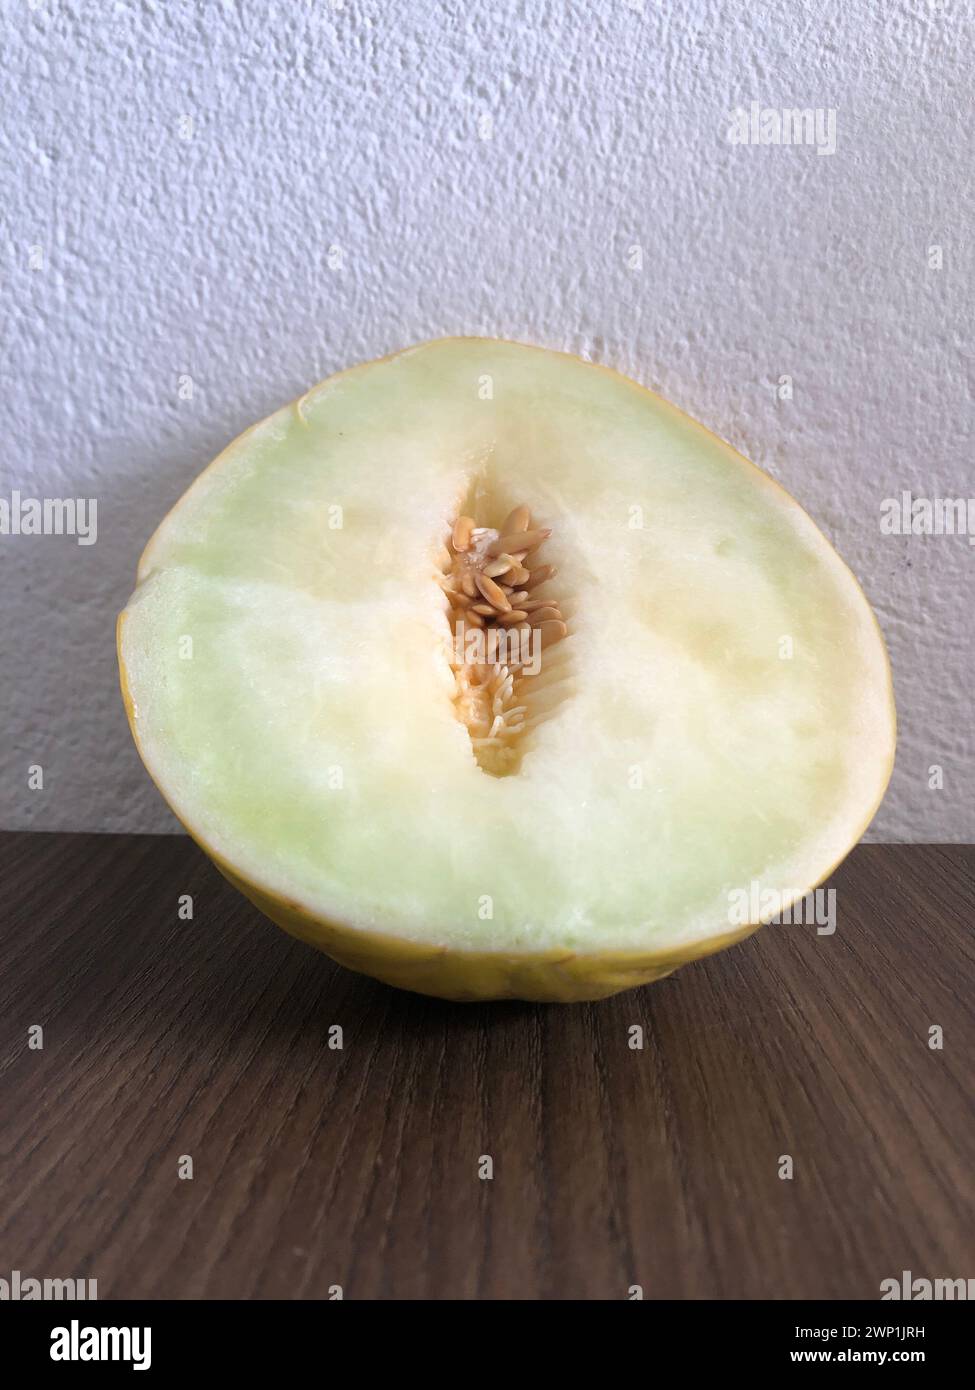 Melone maturo e fresco tagliato su fondo in legno con spazio di copia. Cantaloupe o cantaloupe (Cucumis melo) su fondo di tavola in legno. Frutta preferita Foto Stock